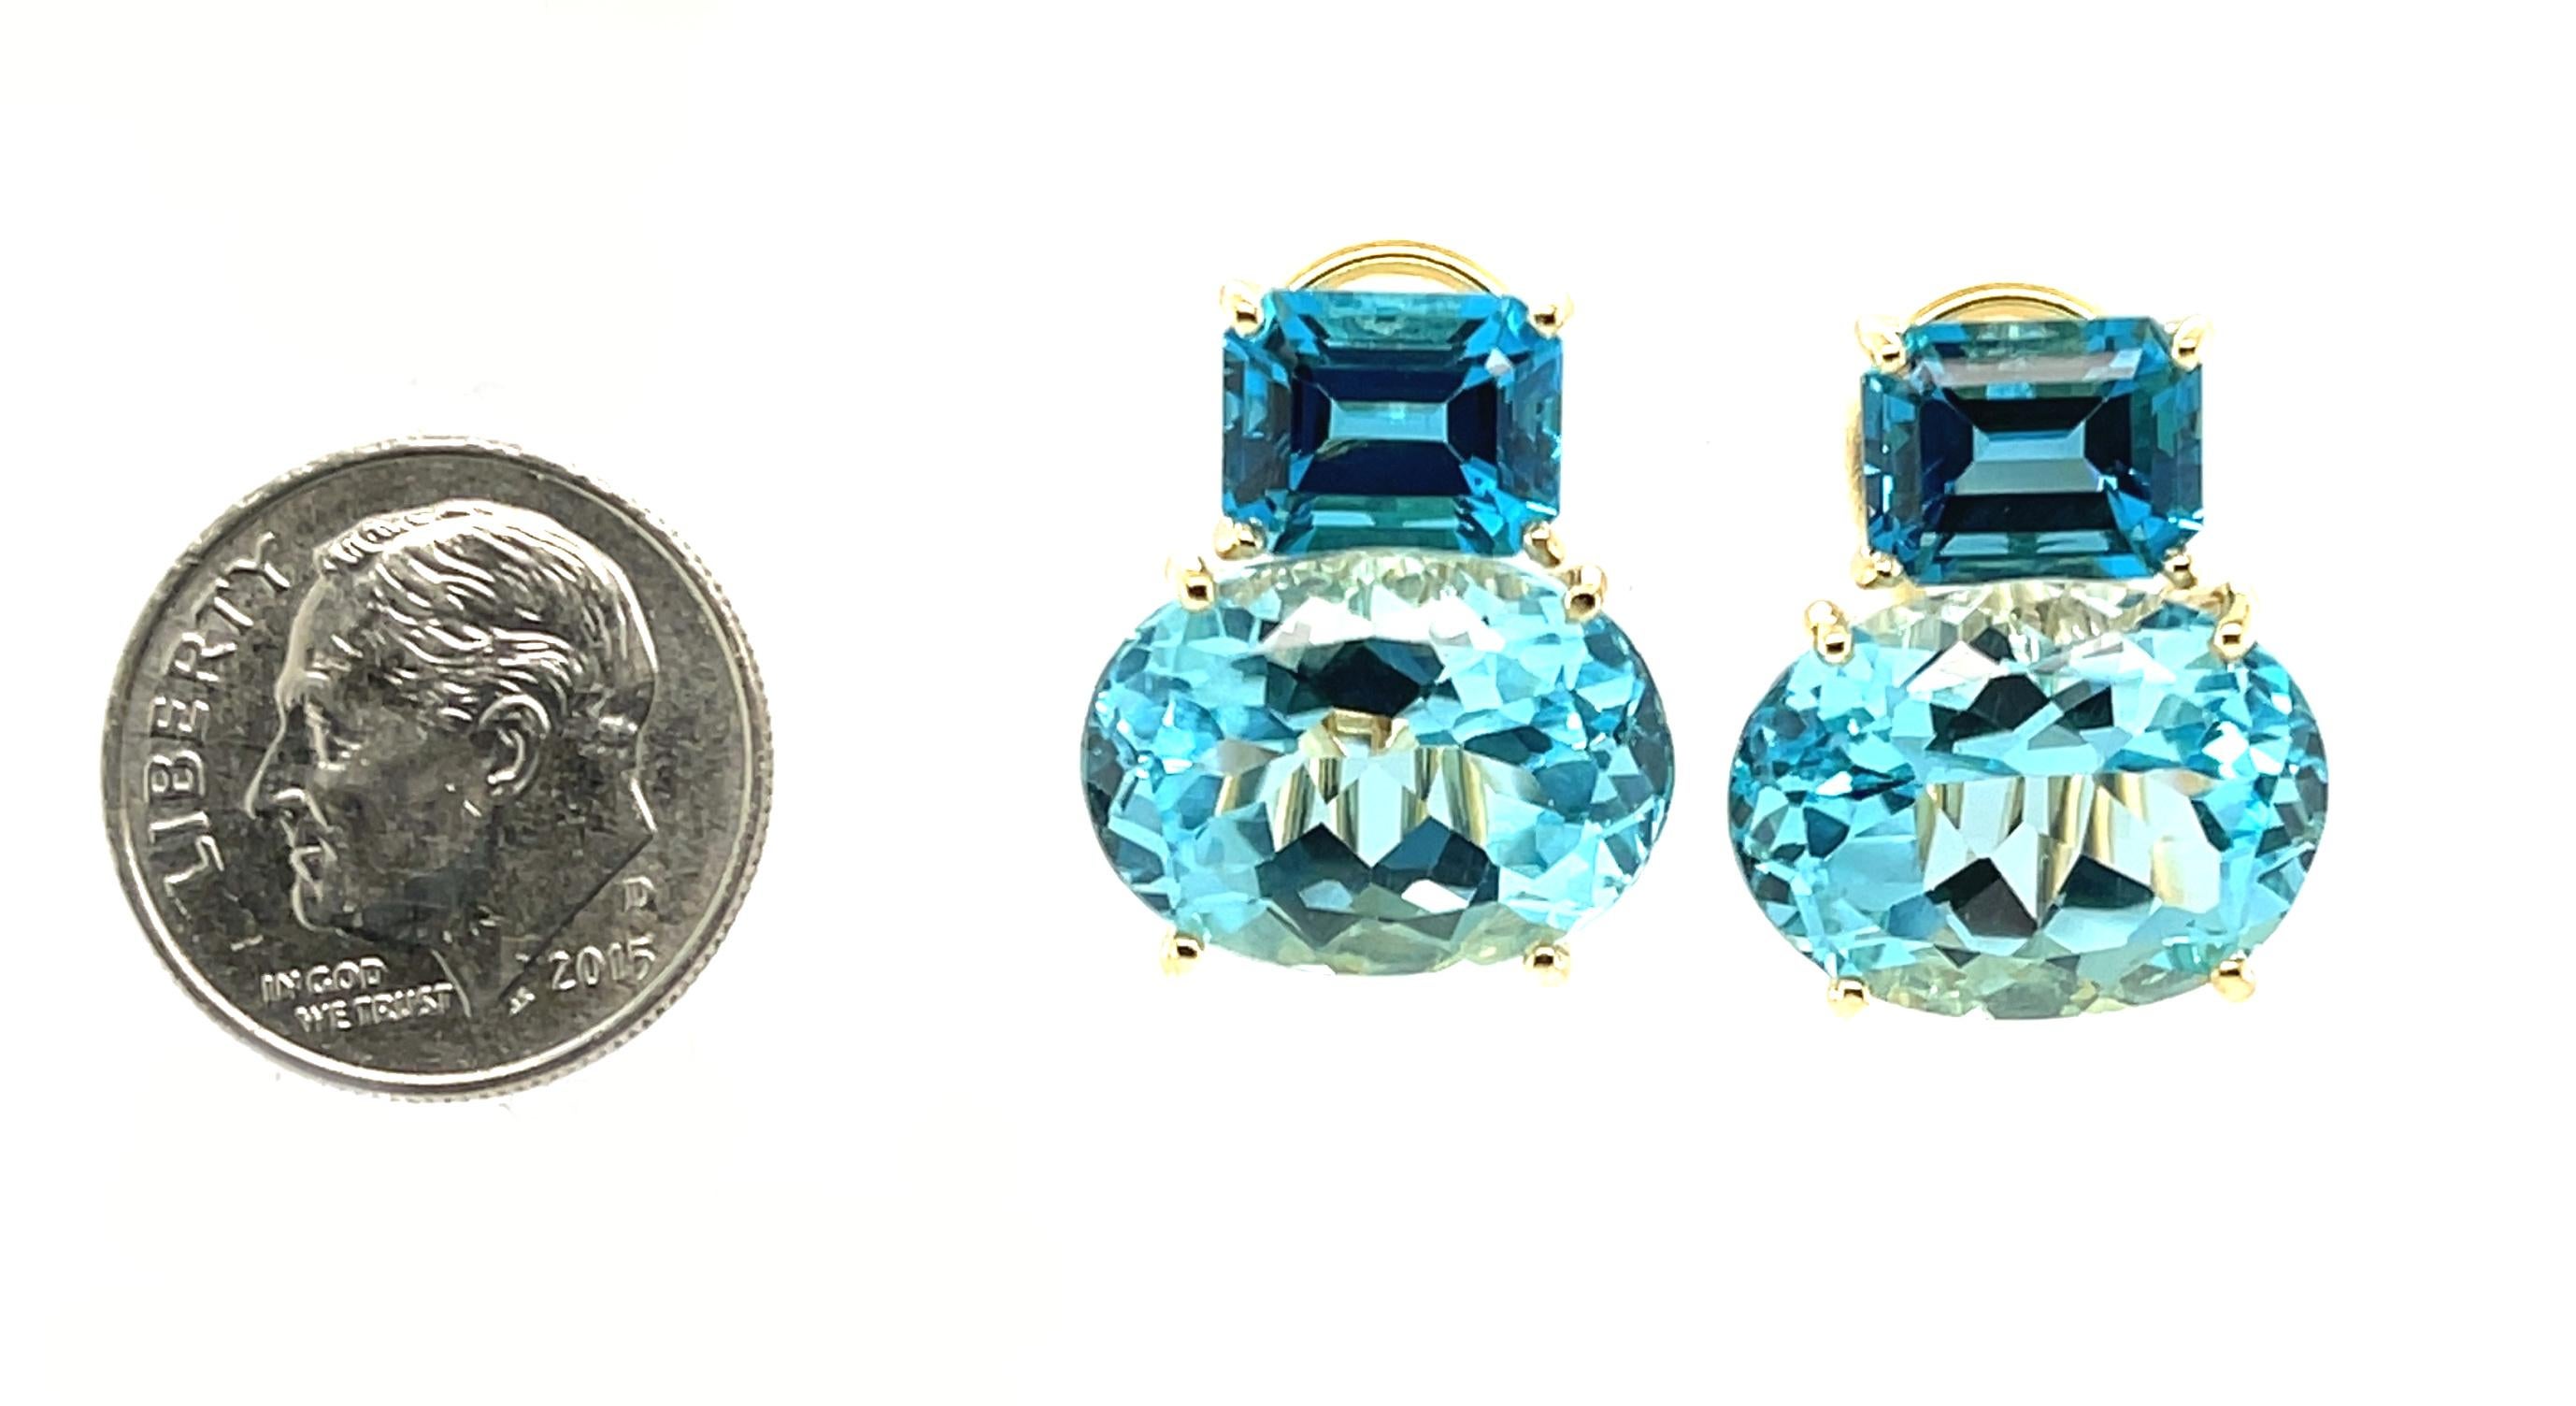 Diese atemberaubenden Ohrringe zeichnen sich durch helle, funkelnde Schweizer Blautopas-Ovale aus, gepaart mit tiefblauen Londoner Blautopas-Smaragdschliffen in einer herrlichen Farbblock-Kombination aus auffälligen Formen und Größen! Mit einer